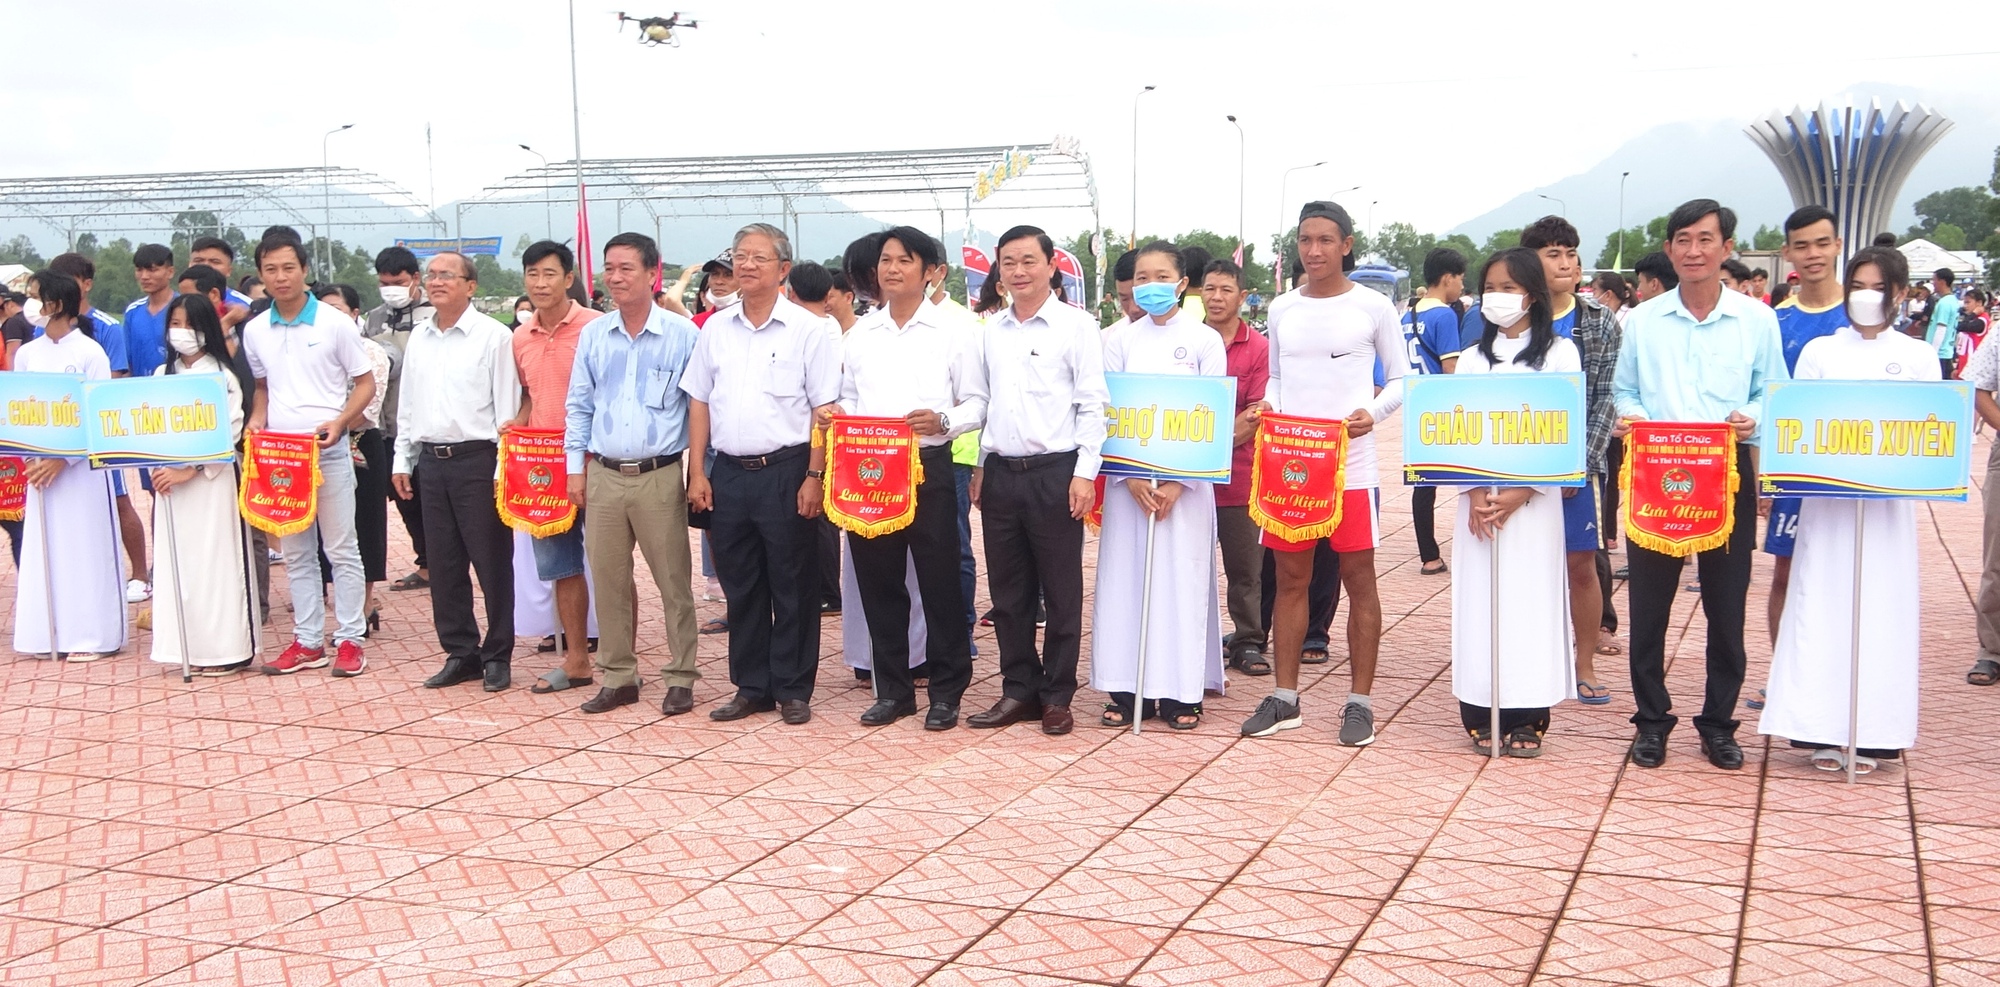  14 máy bay không người lái kéo cờ Tổ quốc, cờ Đảng tại lễ khai mạc tại Hội thao Nông dân tỉnh An Giang - Ảnh 1.